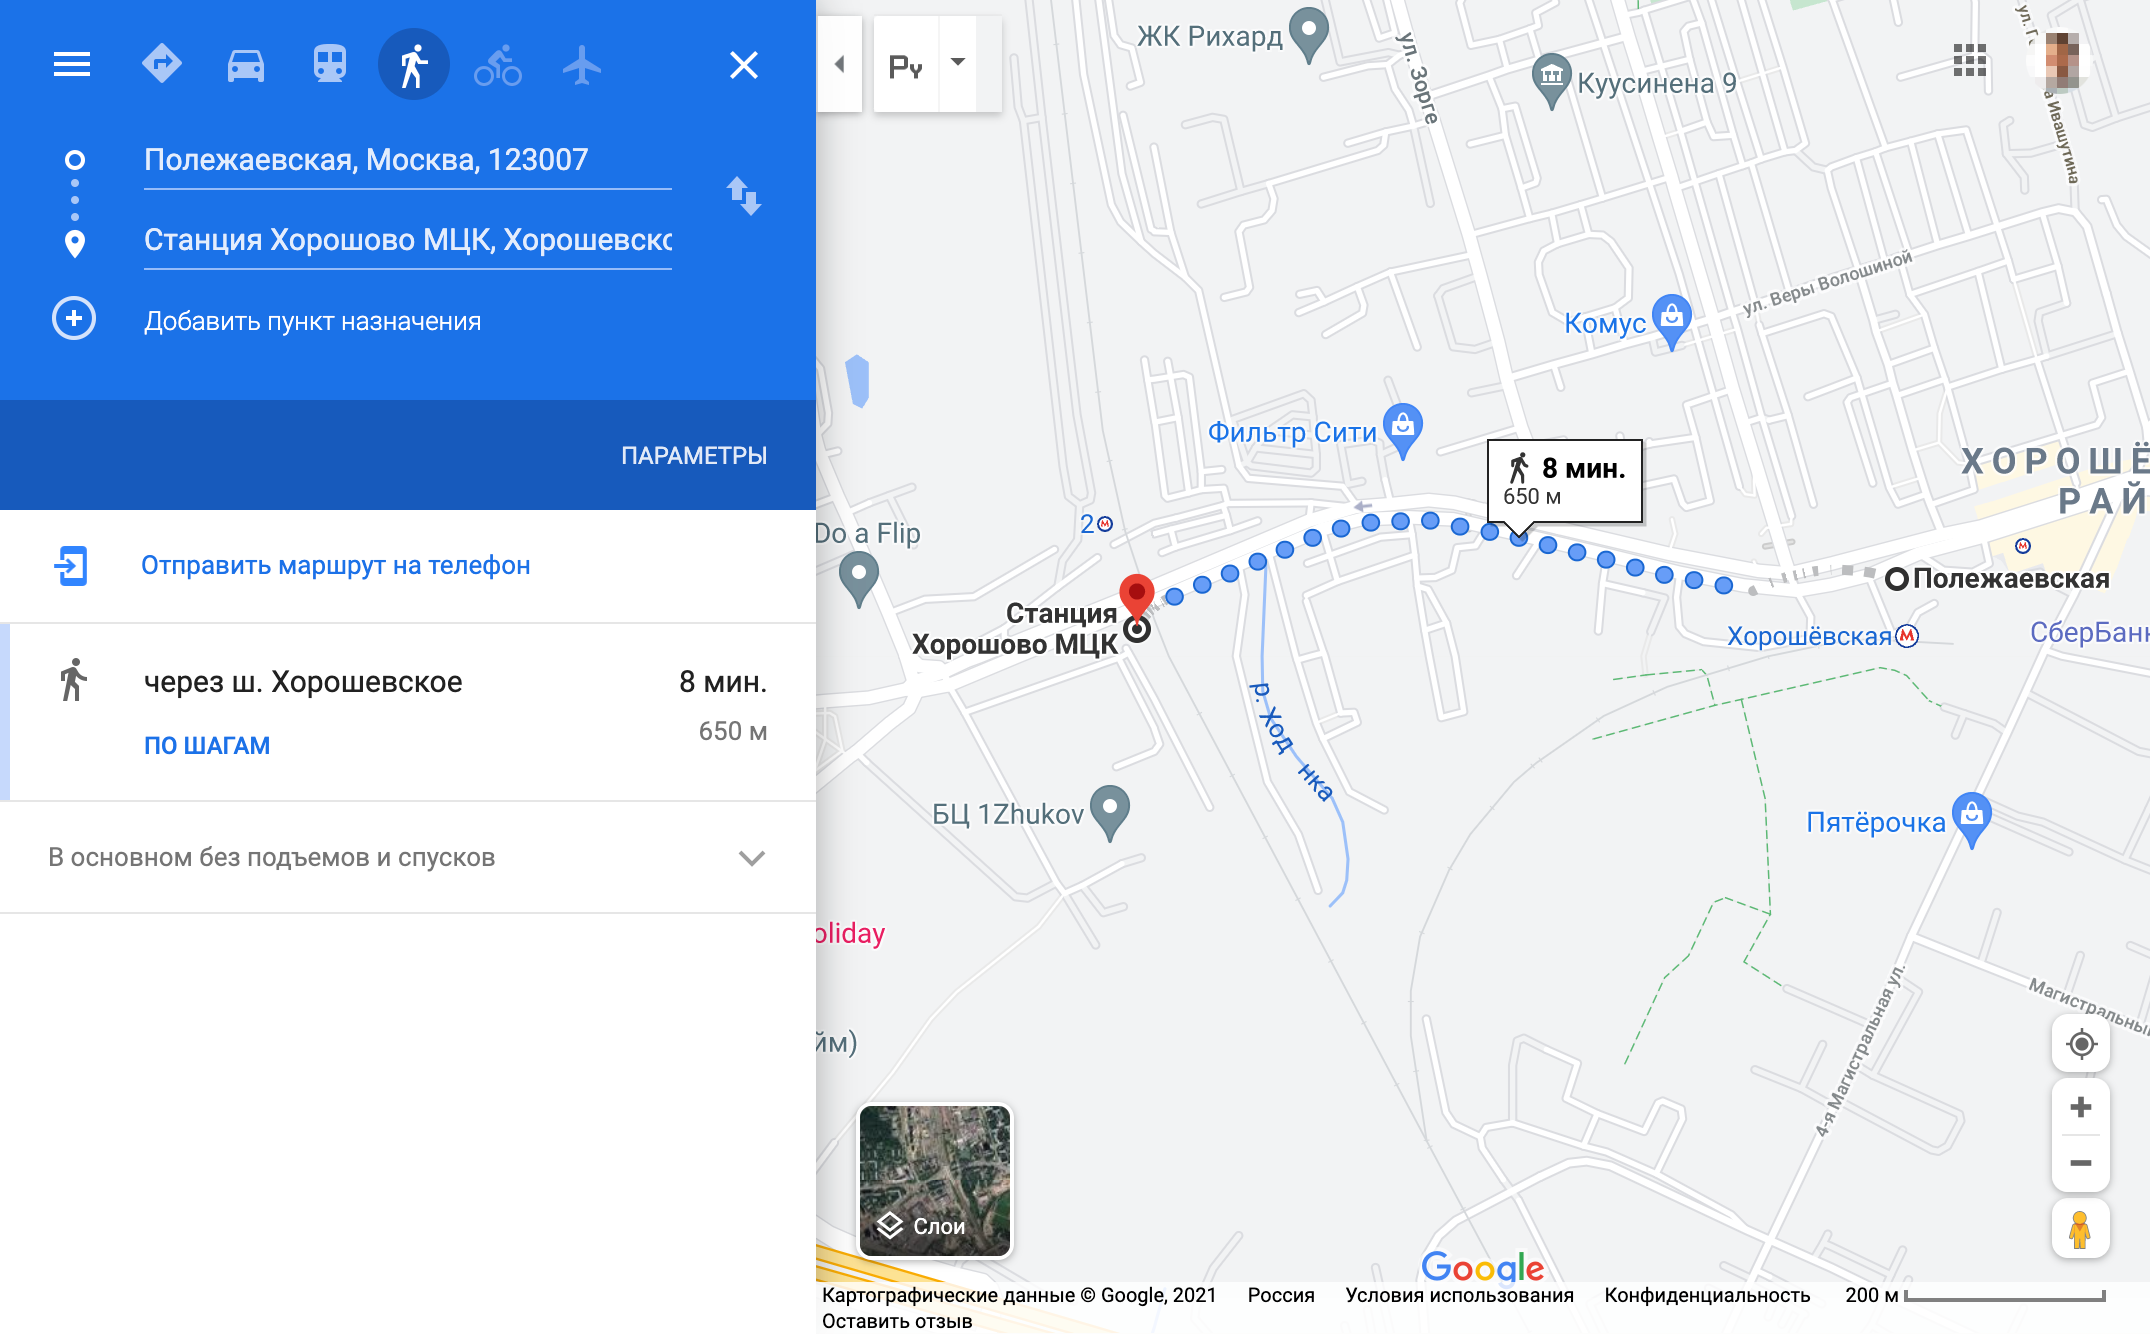 Например, от «Полежаевской» до «Хорошево» 650 метров, или 8 минут пешком по улице. Но если с начала маршрута прошло меньше 90 минут, за переход платить не придется. Источник: google.com